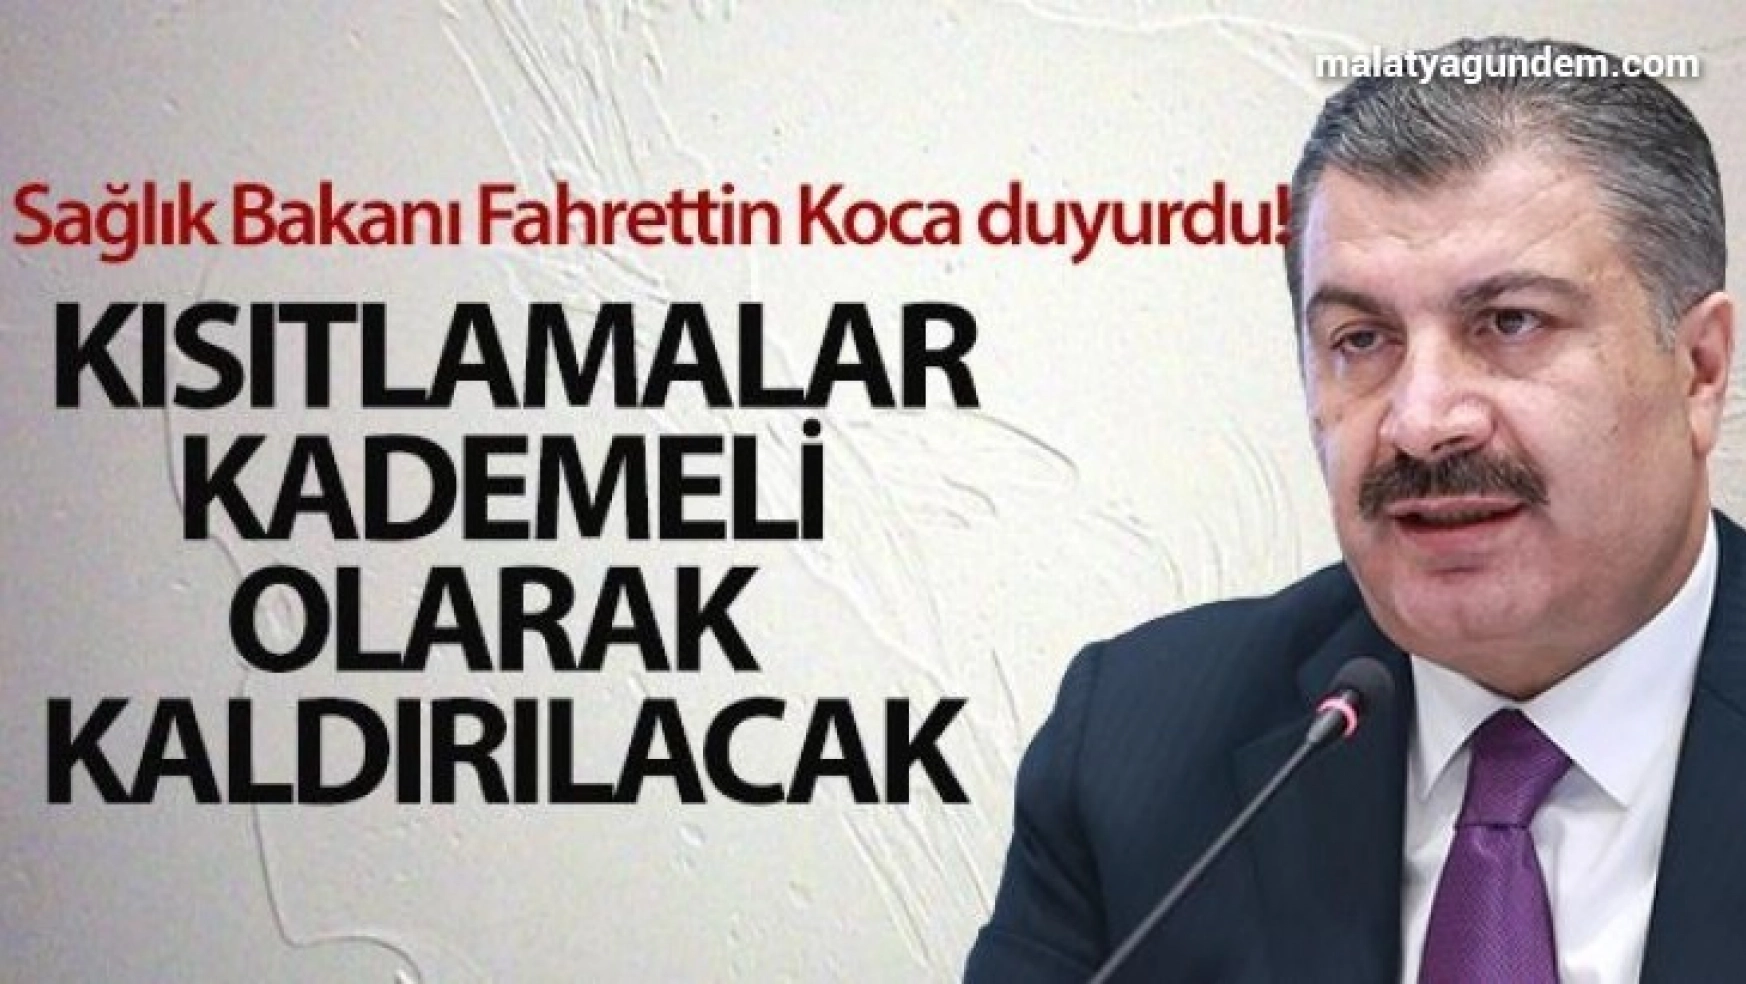 Sağlık Bakanı Fahrettin Koca duyurdu! Kısıtlamalar kademeli olarak kaldırılacak